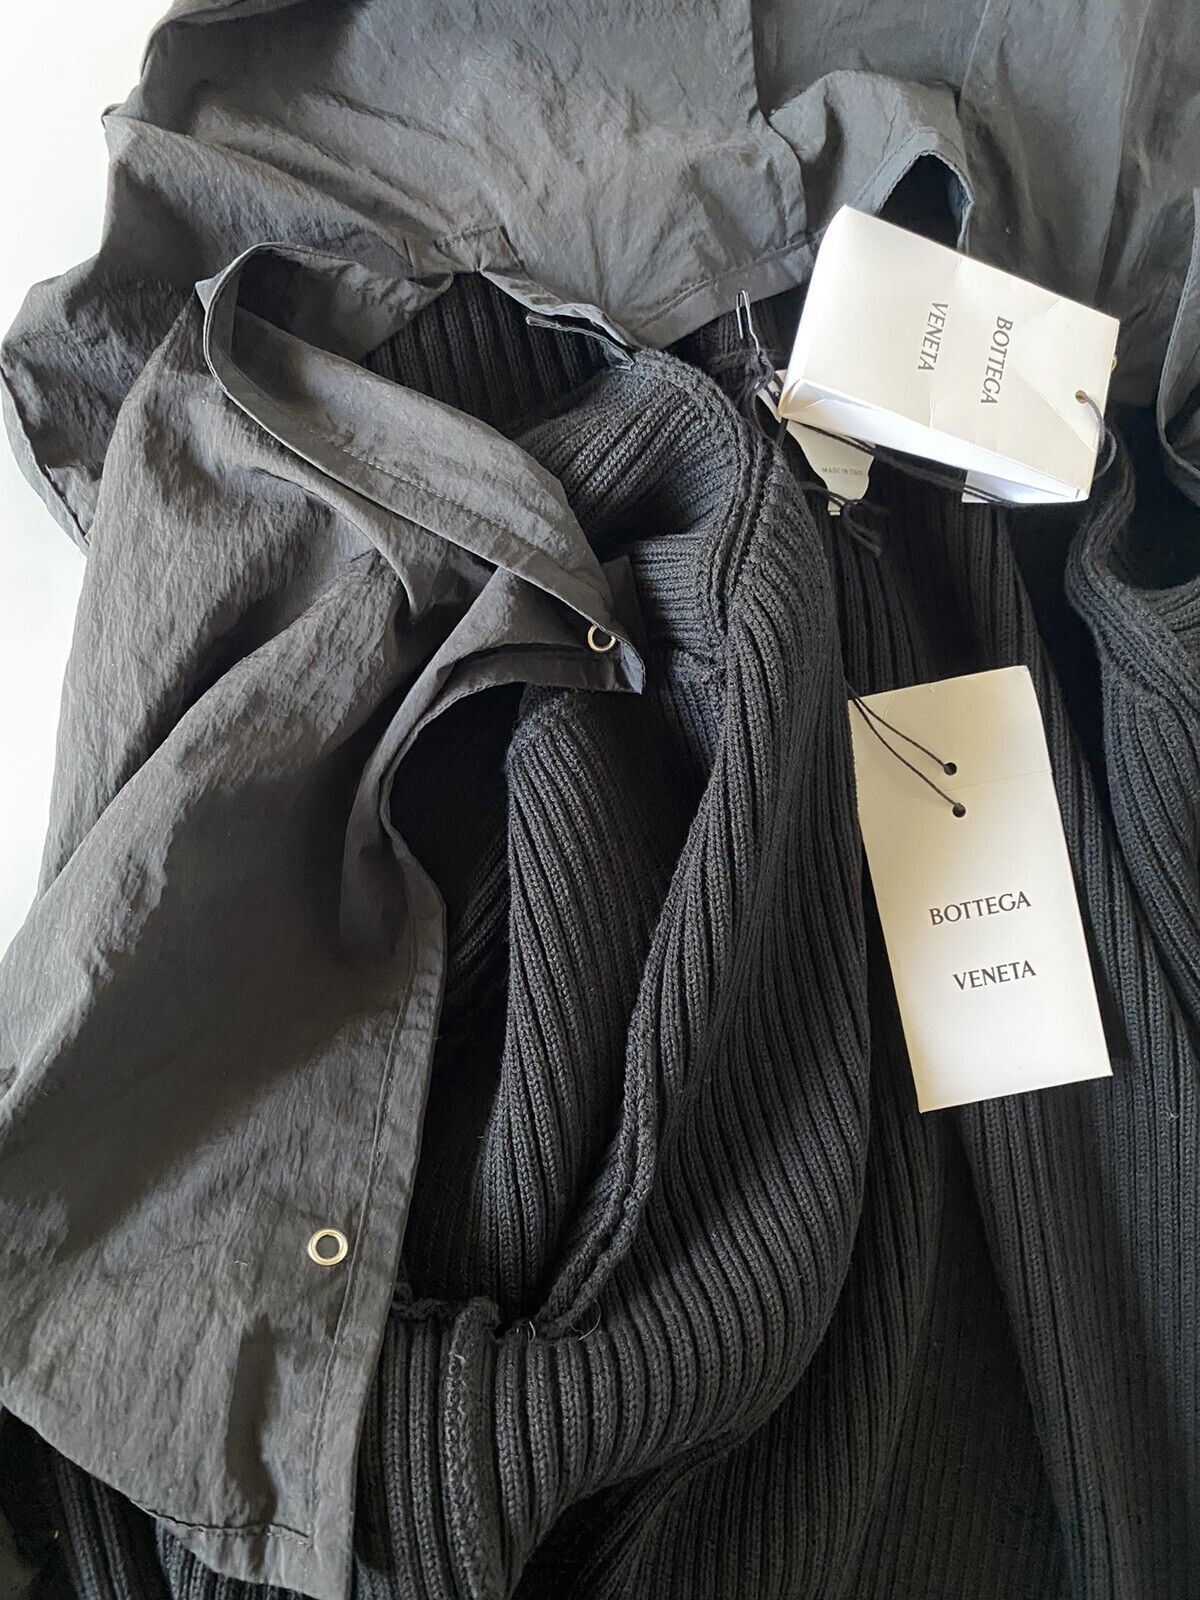 Neu mit Etikett: 1750 $ Bottega Veneta Herren-Pulloverjacke aus klobiger Baumwolle, Schwarz, L (passt für XL)